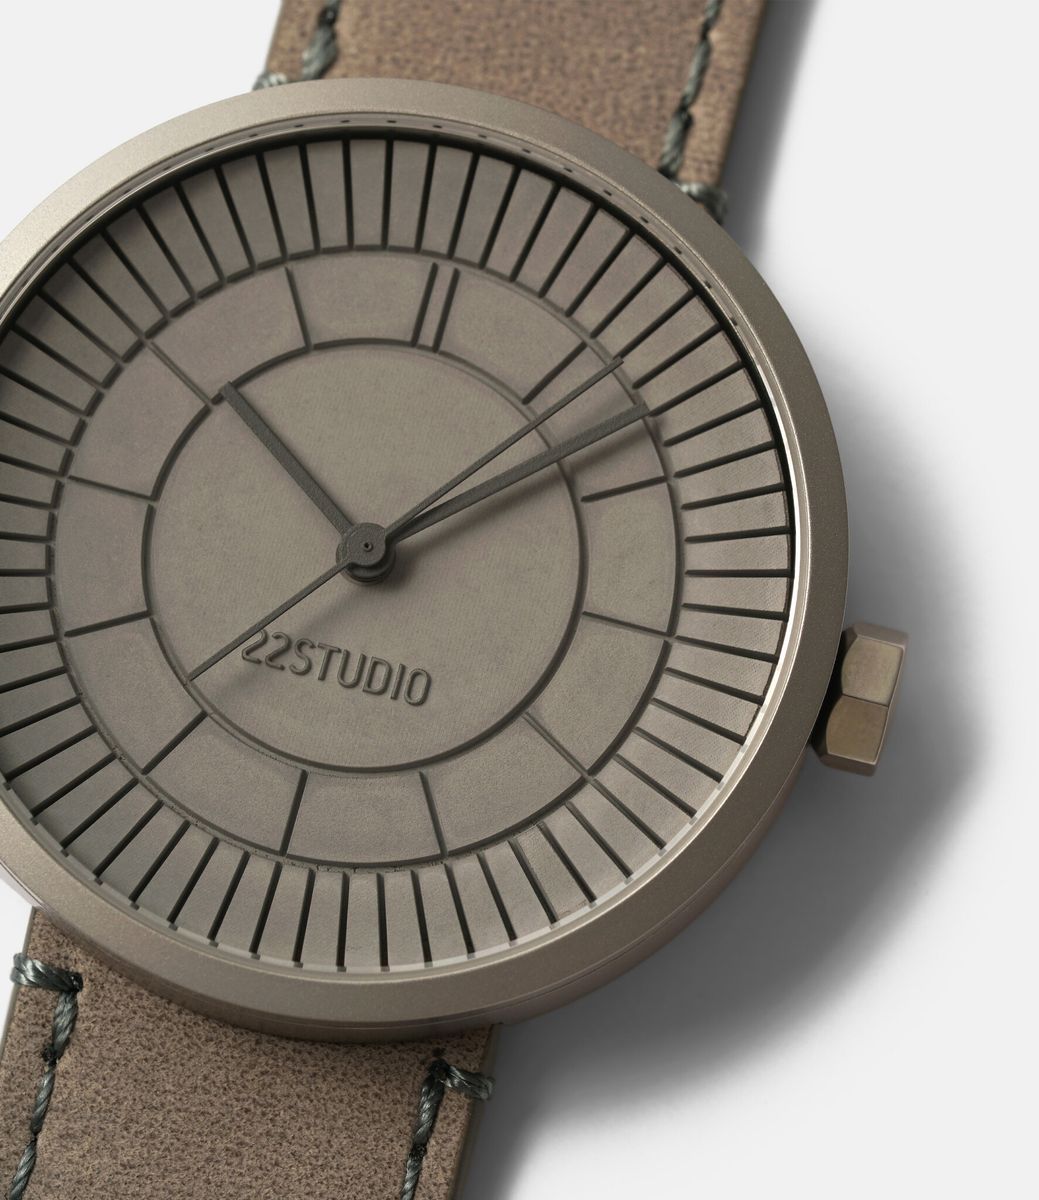 22 Studio Concrete Sector Grey — часы с бетонным циферблатом (40 мм)